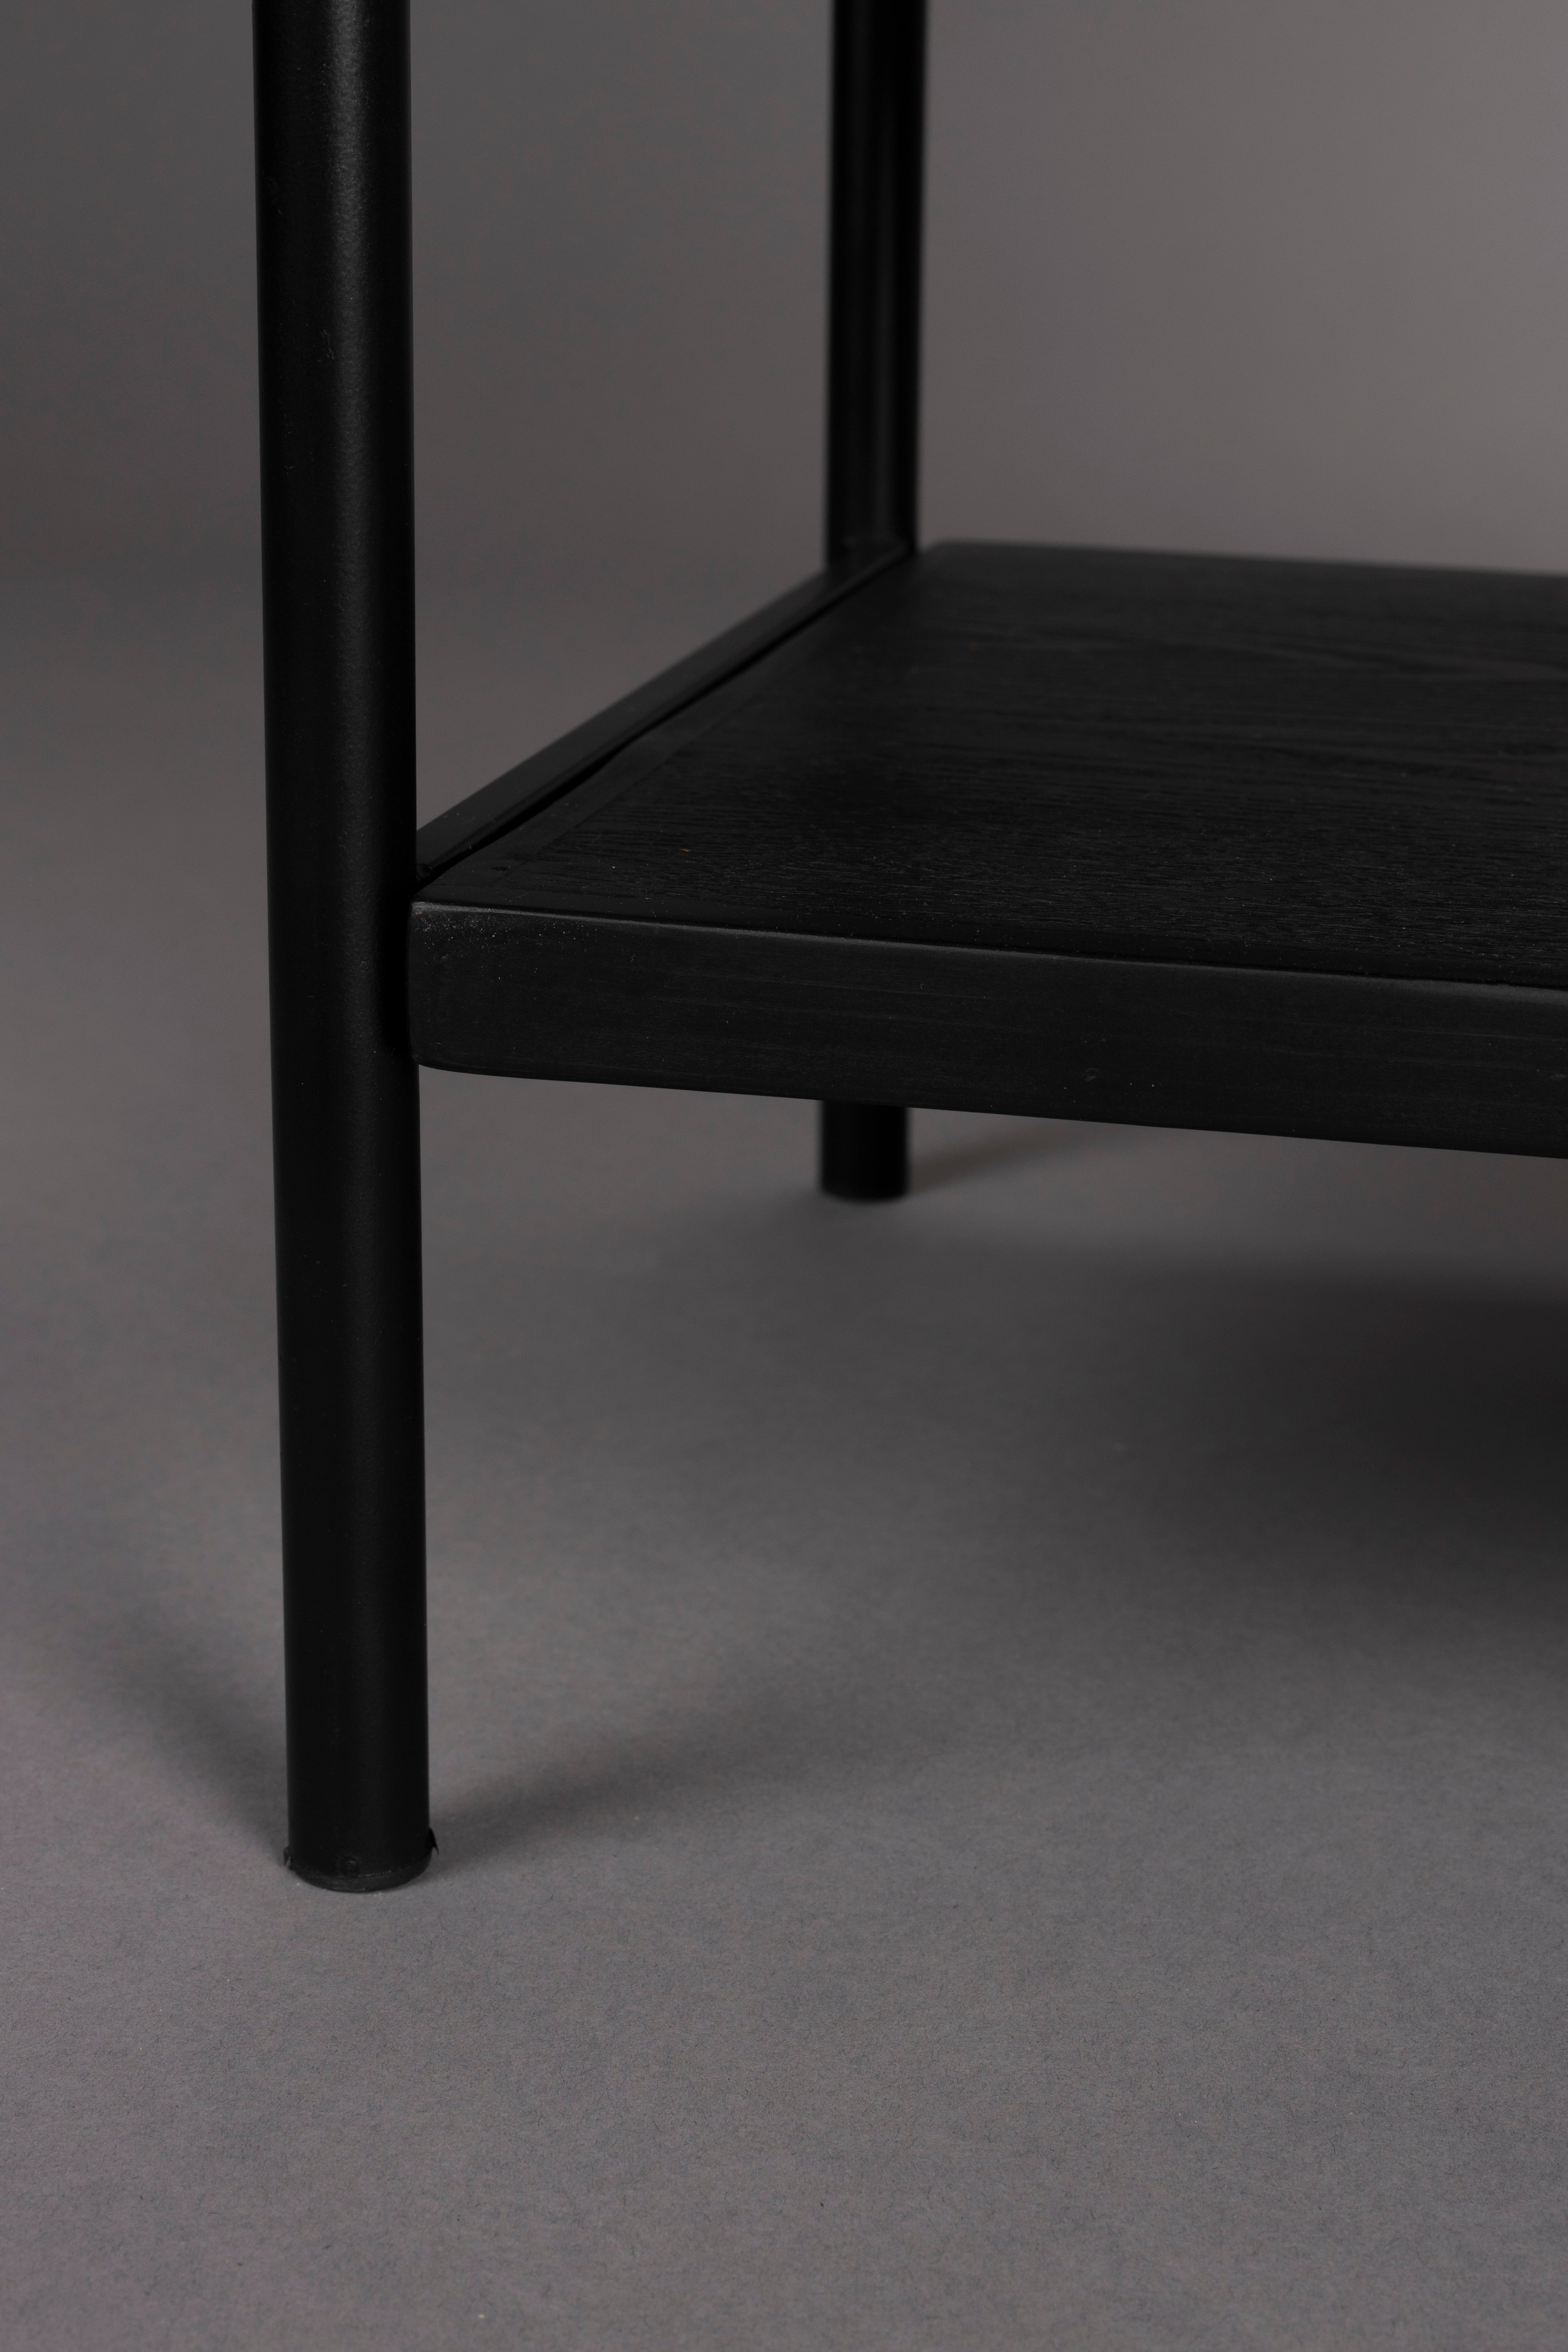 Beistelltisch / Bedstand Yasu in Schwarz präsentiert im Onlineshop von KAQTU Design AG. Beistelltisch ist von Dutchbone